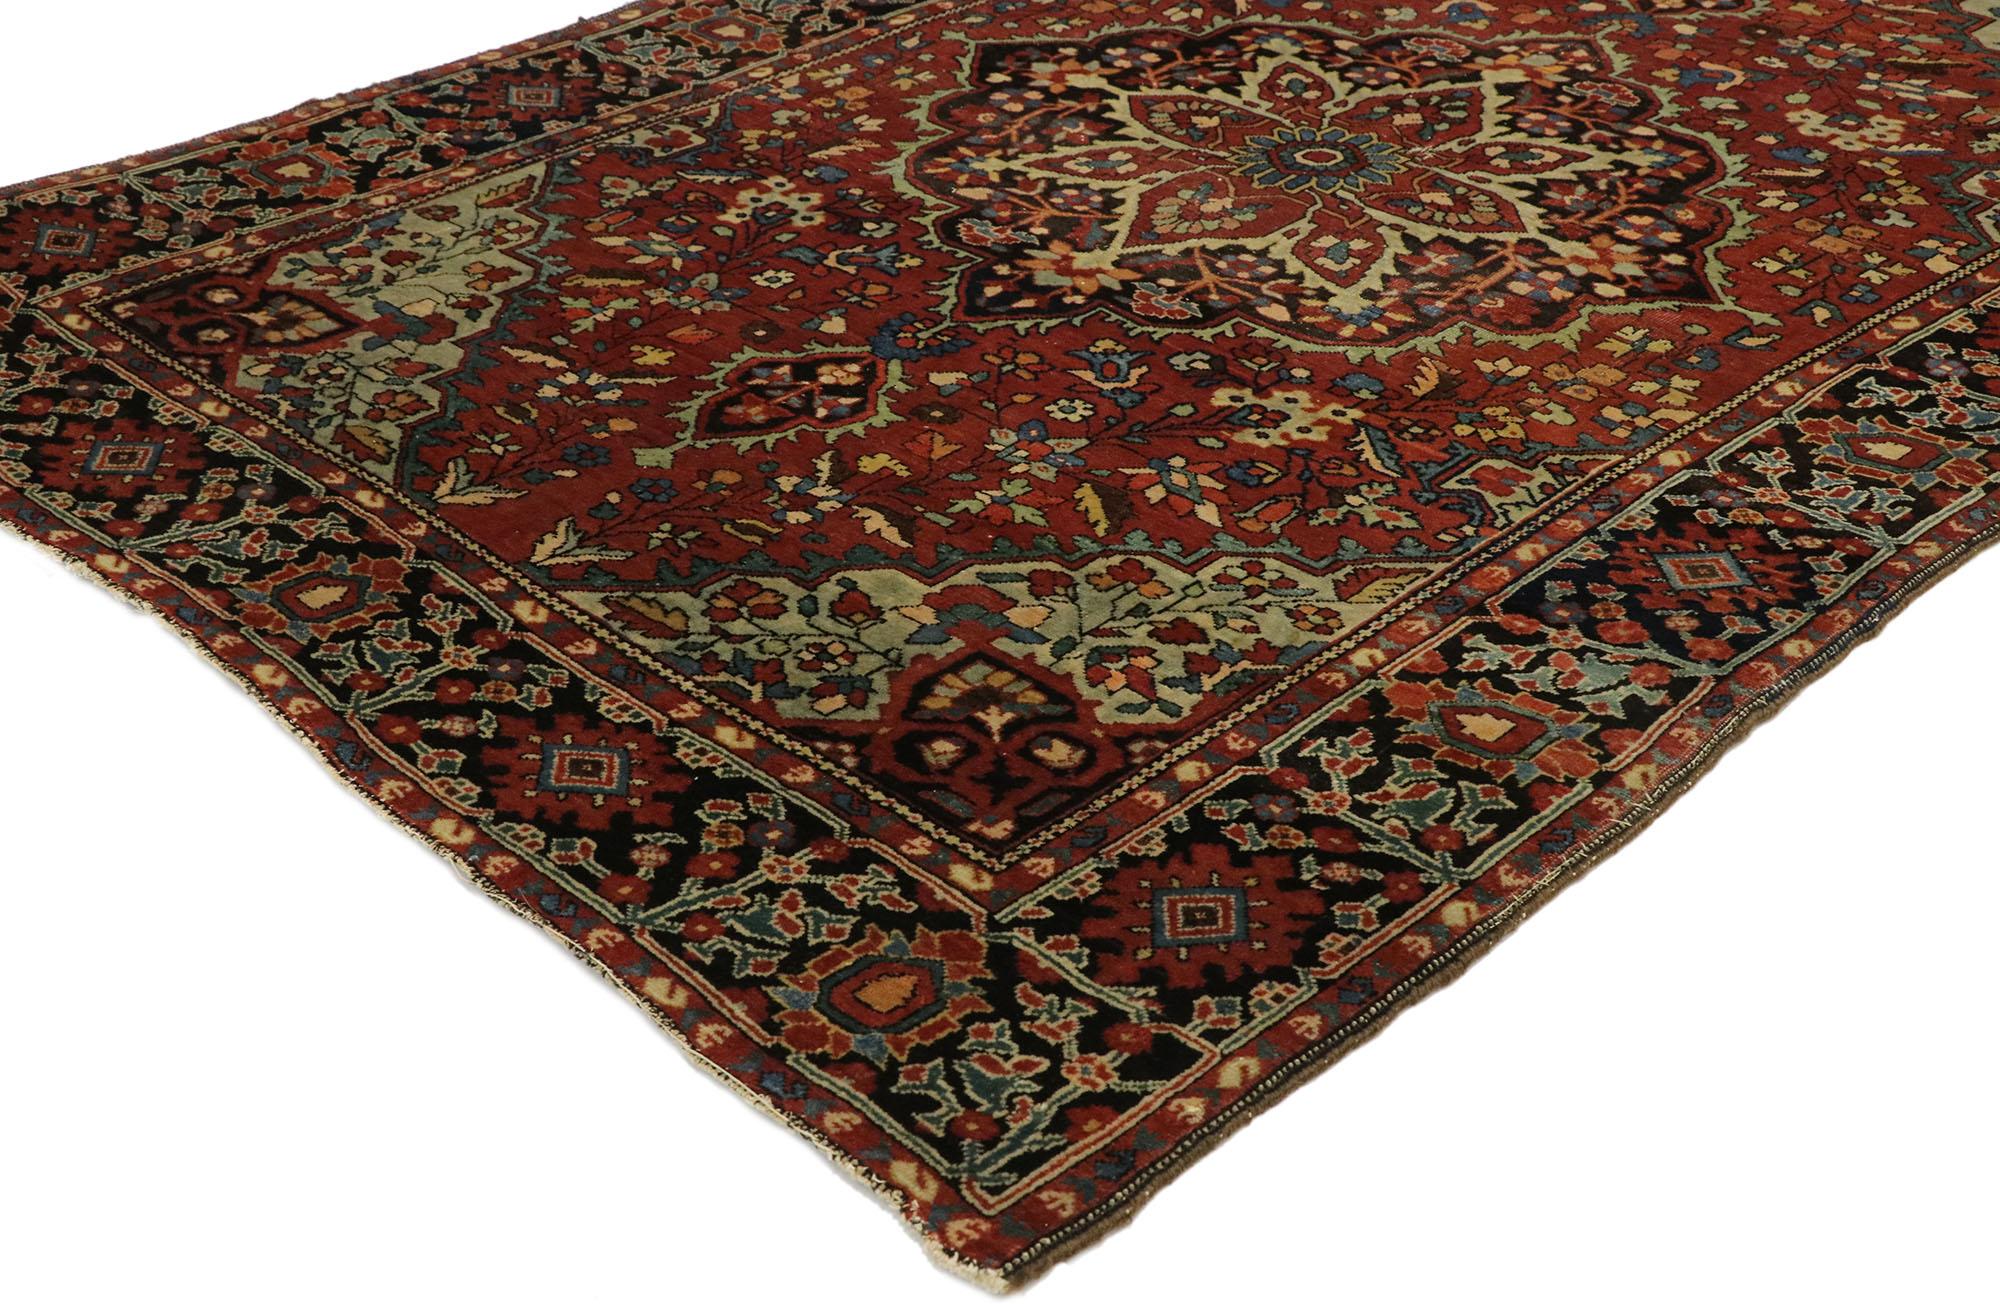 77474, antiker persischer Farahan-Teppich im Mid-Century Modern-Stil. Mit seiner zeitlosen Anziehungskraft, den raffinierten Farben und den architektonischen Designelementen lässt sich dieser handgeknüpfte antike persische Farahan-Teppich aus Wolle